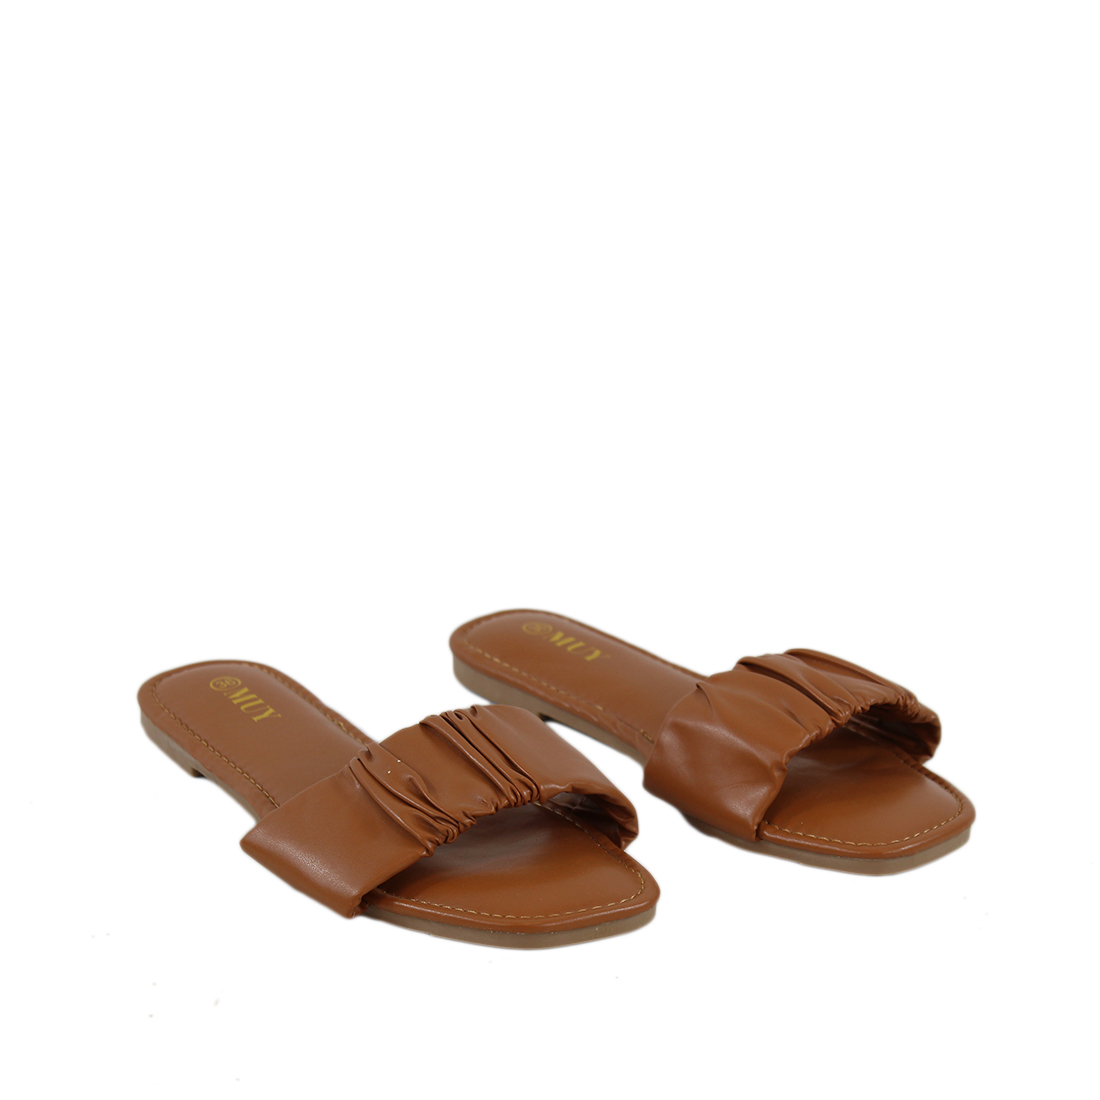 Ruched Single Band Slide Sandals